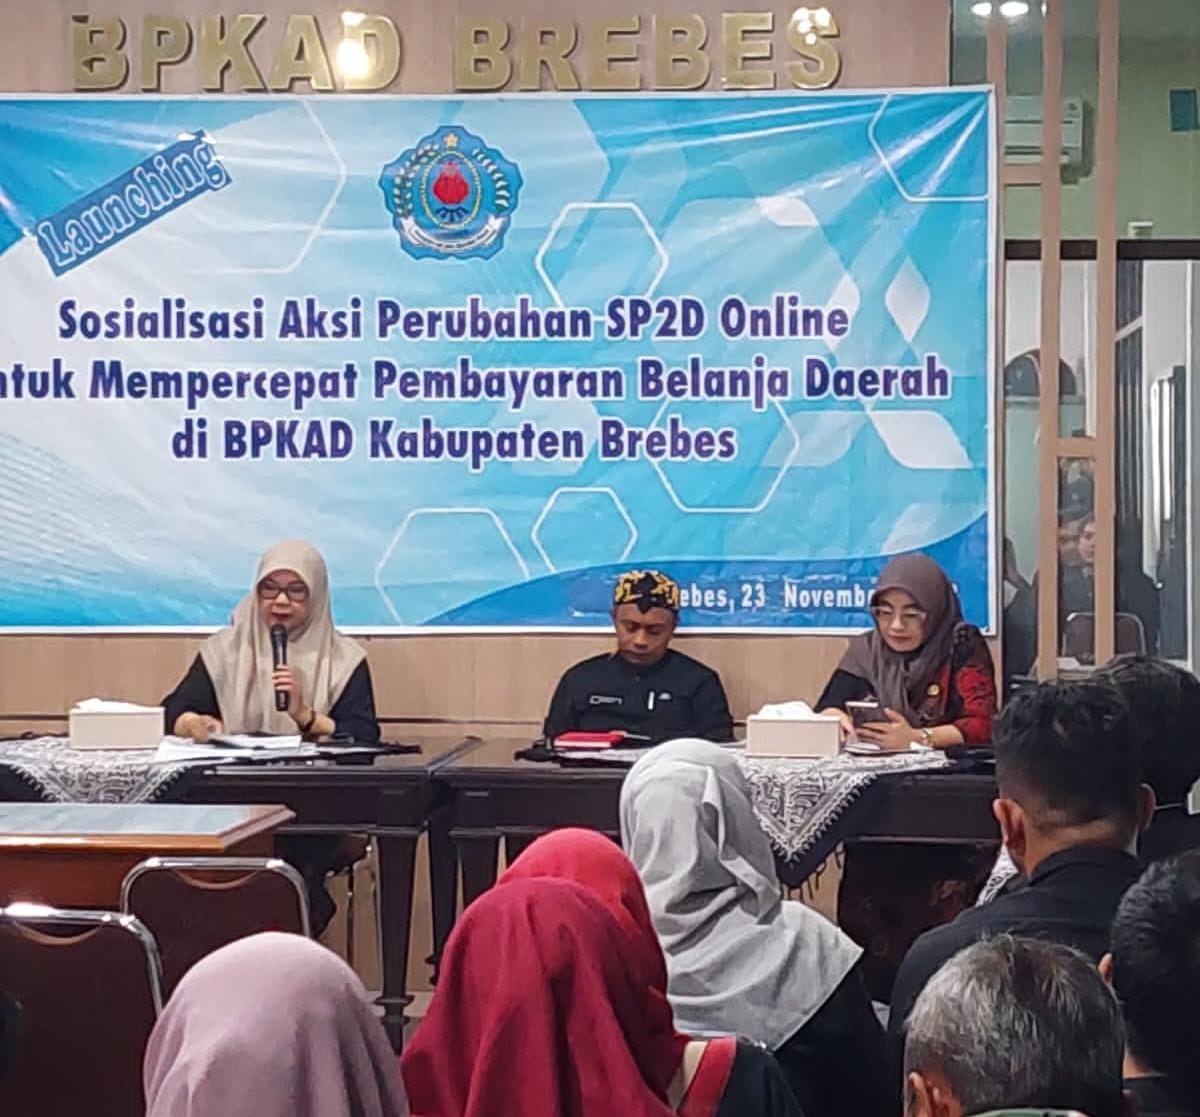 Percepat Pembayaran Belanja Daerah, Pemkab Brebes Launching Aplikasi SP2D Online